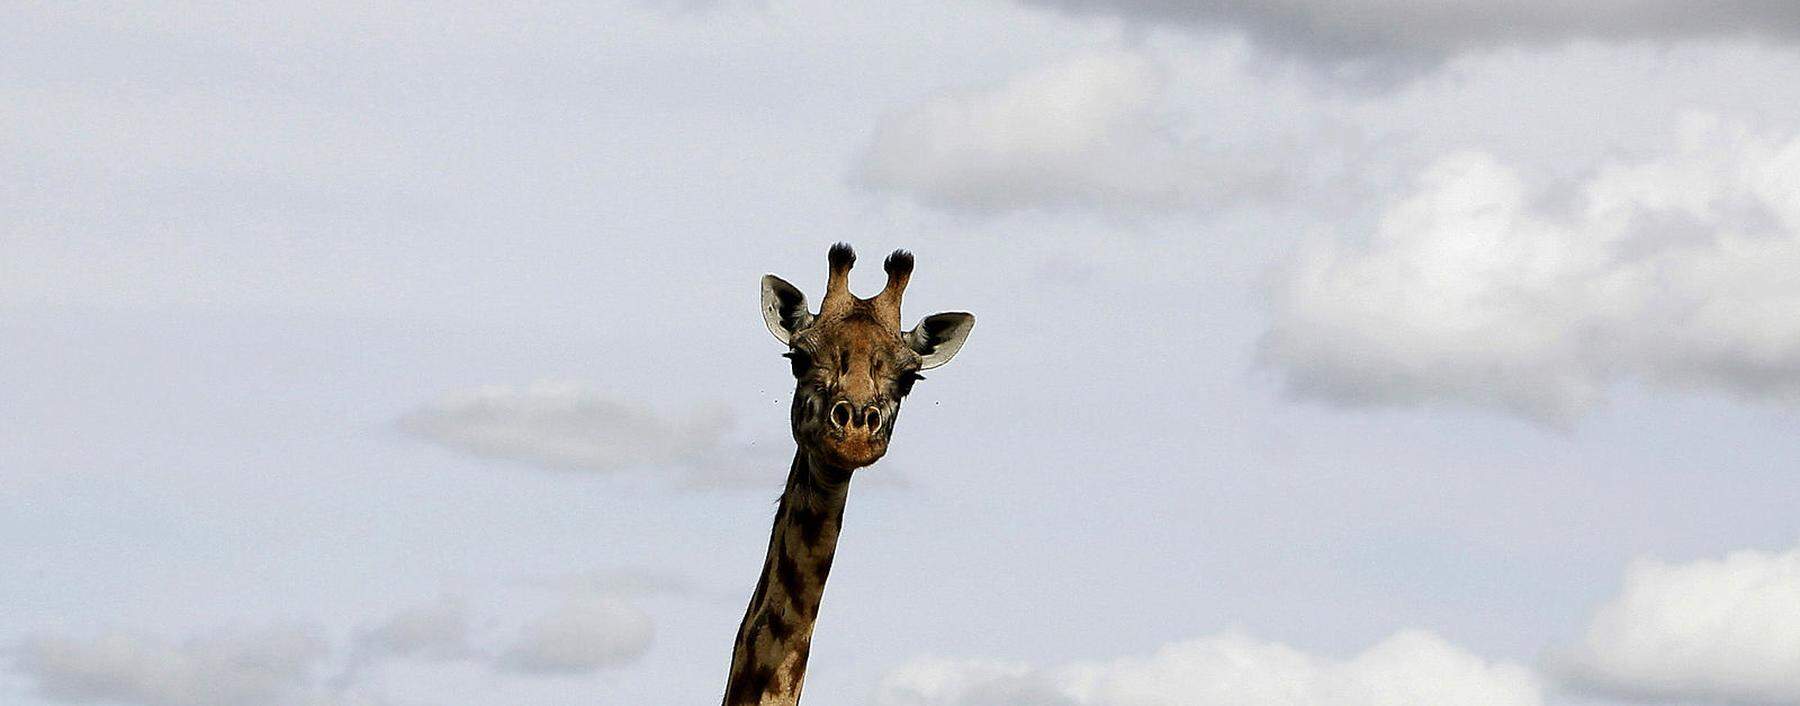 Giraffen zählen zu den bedrohten Arten. Jetzt wollen mehrere Länder in Afrika ihren Schutz vorantreiben.